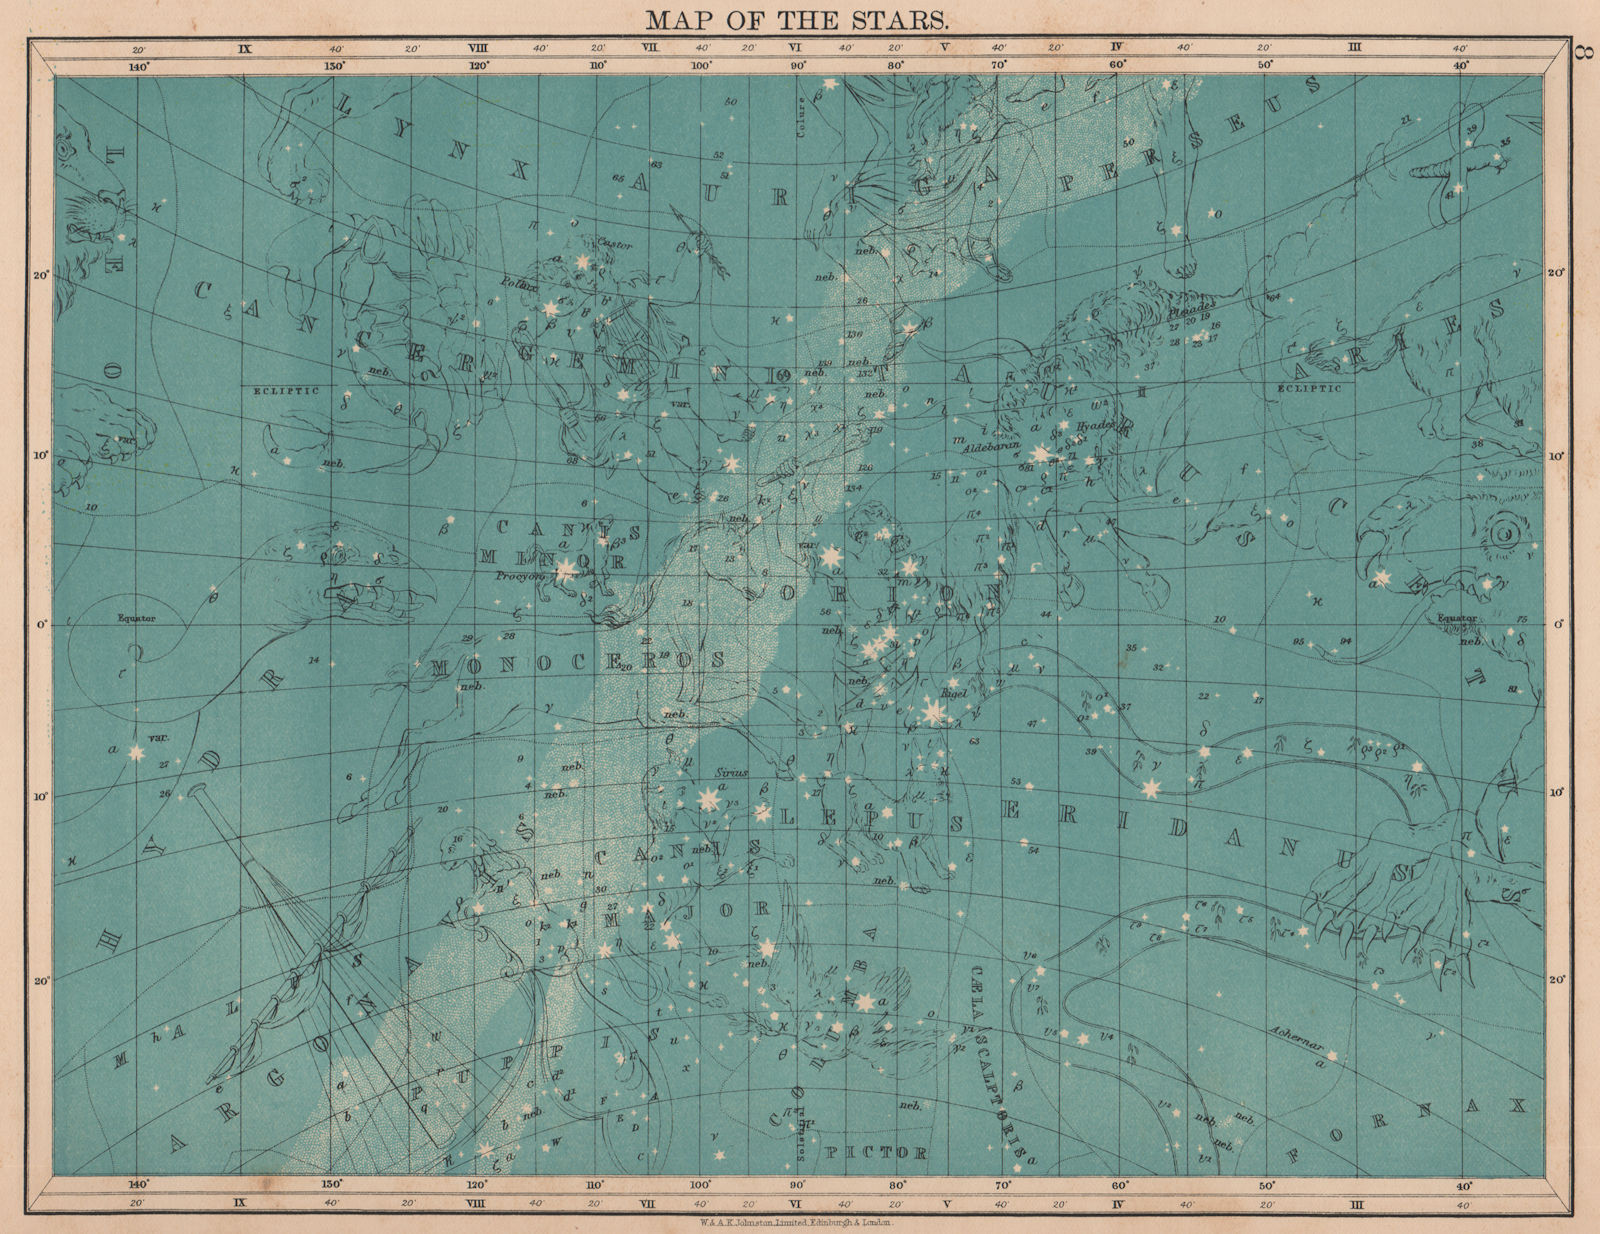 Associate Product ASTRONOMY. Star map Cancer Eridanua Orion Auriga Lynx Canis Major. JOHNSTON 1906